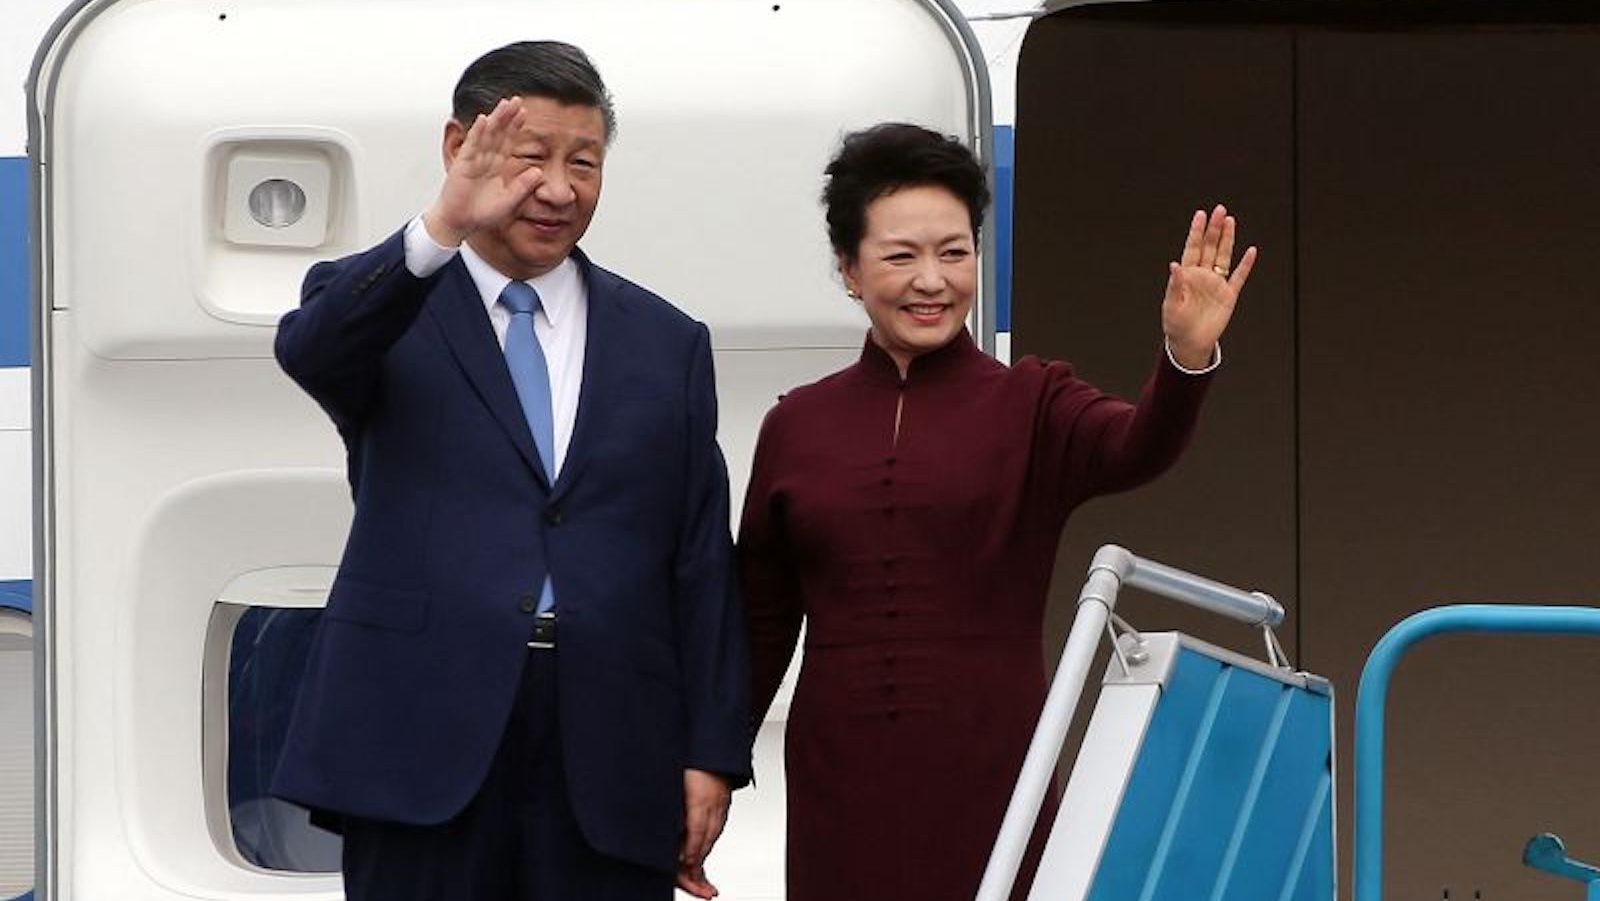 El líder de China Xi Jinping impulsa una mayor confianza con Vietnam
tras el acercamiento de Hanoi a Washington